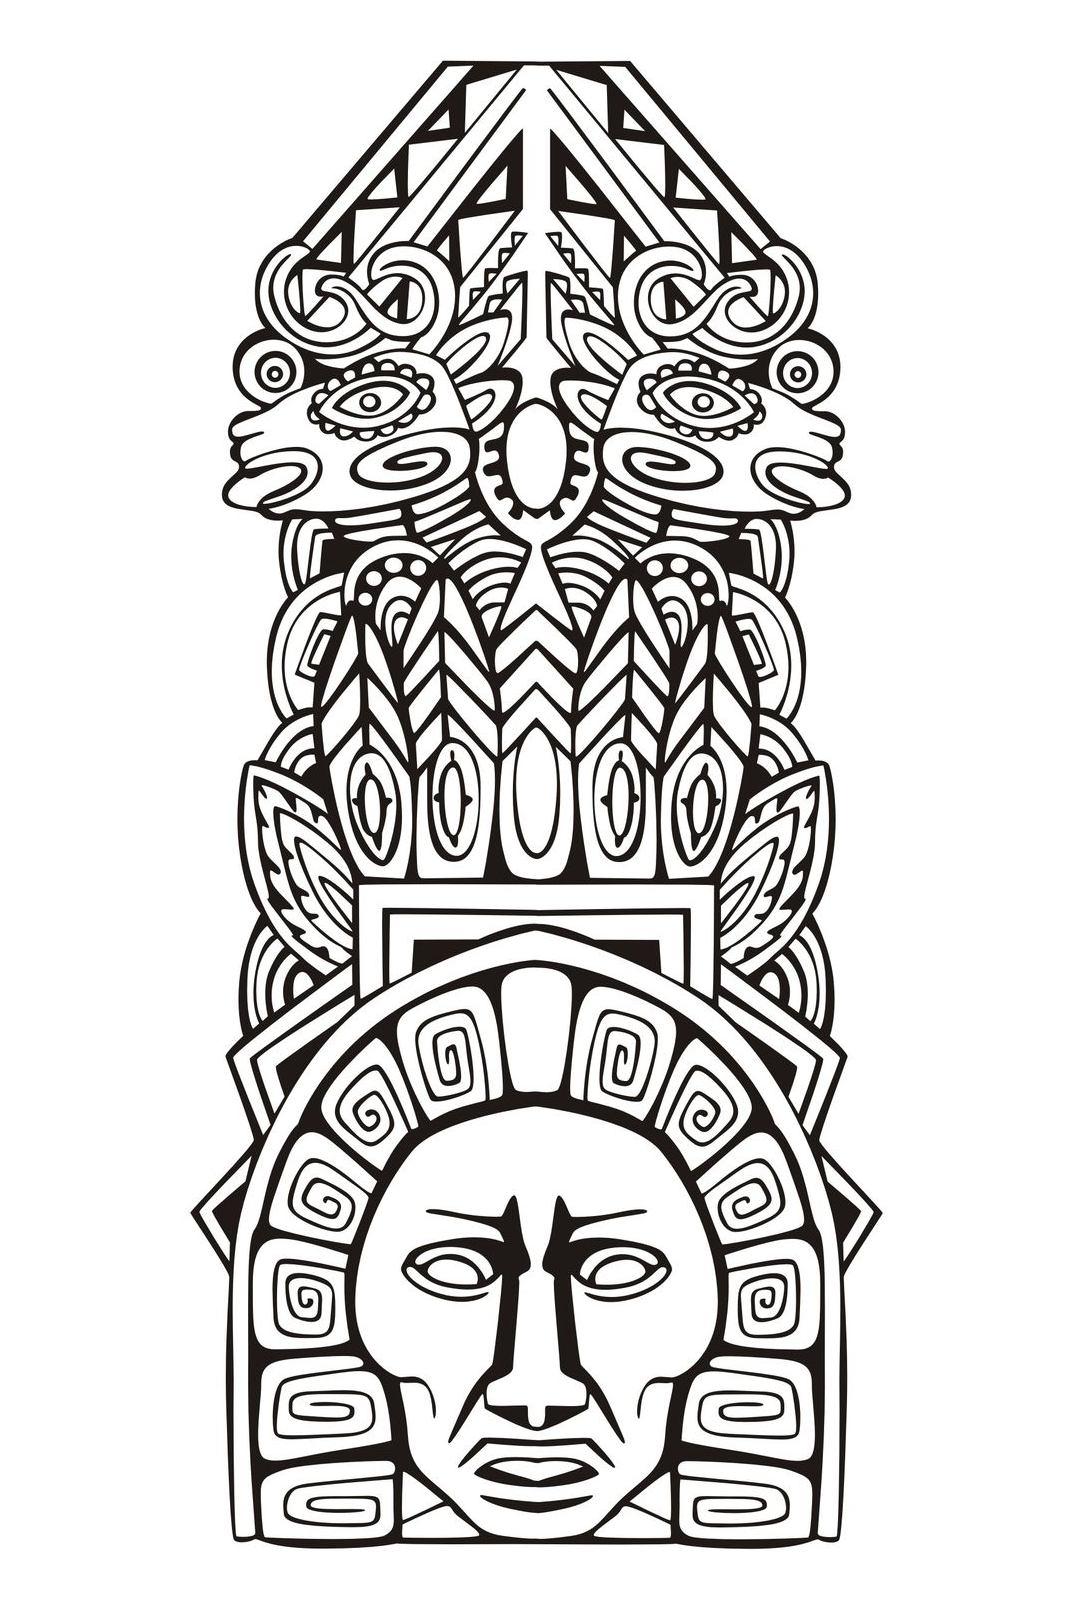 Desenhos grátis para colorir de Maias, astecas e incas para imprimir e colorir, Artista : Rocich   Fonte : 123rf